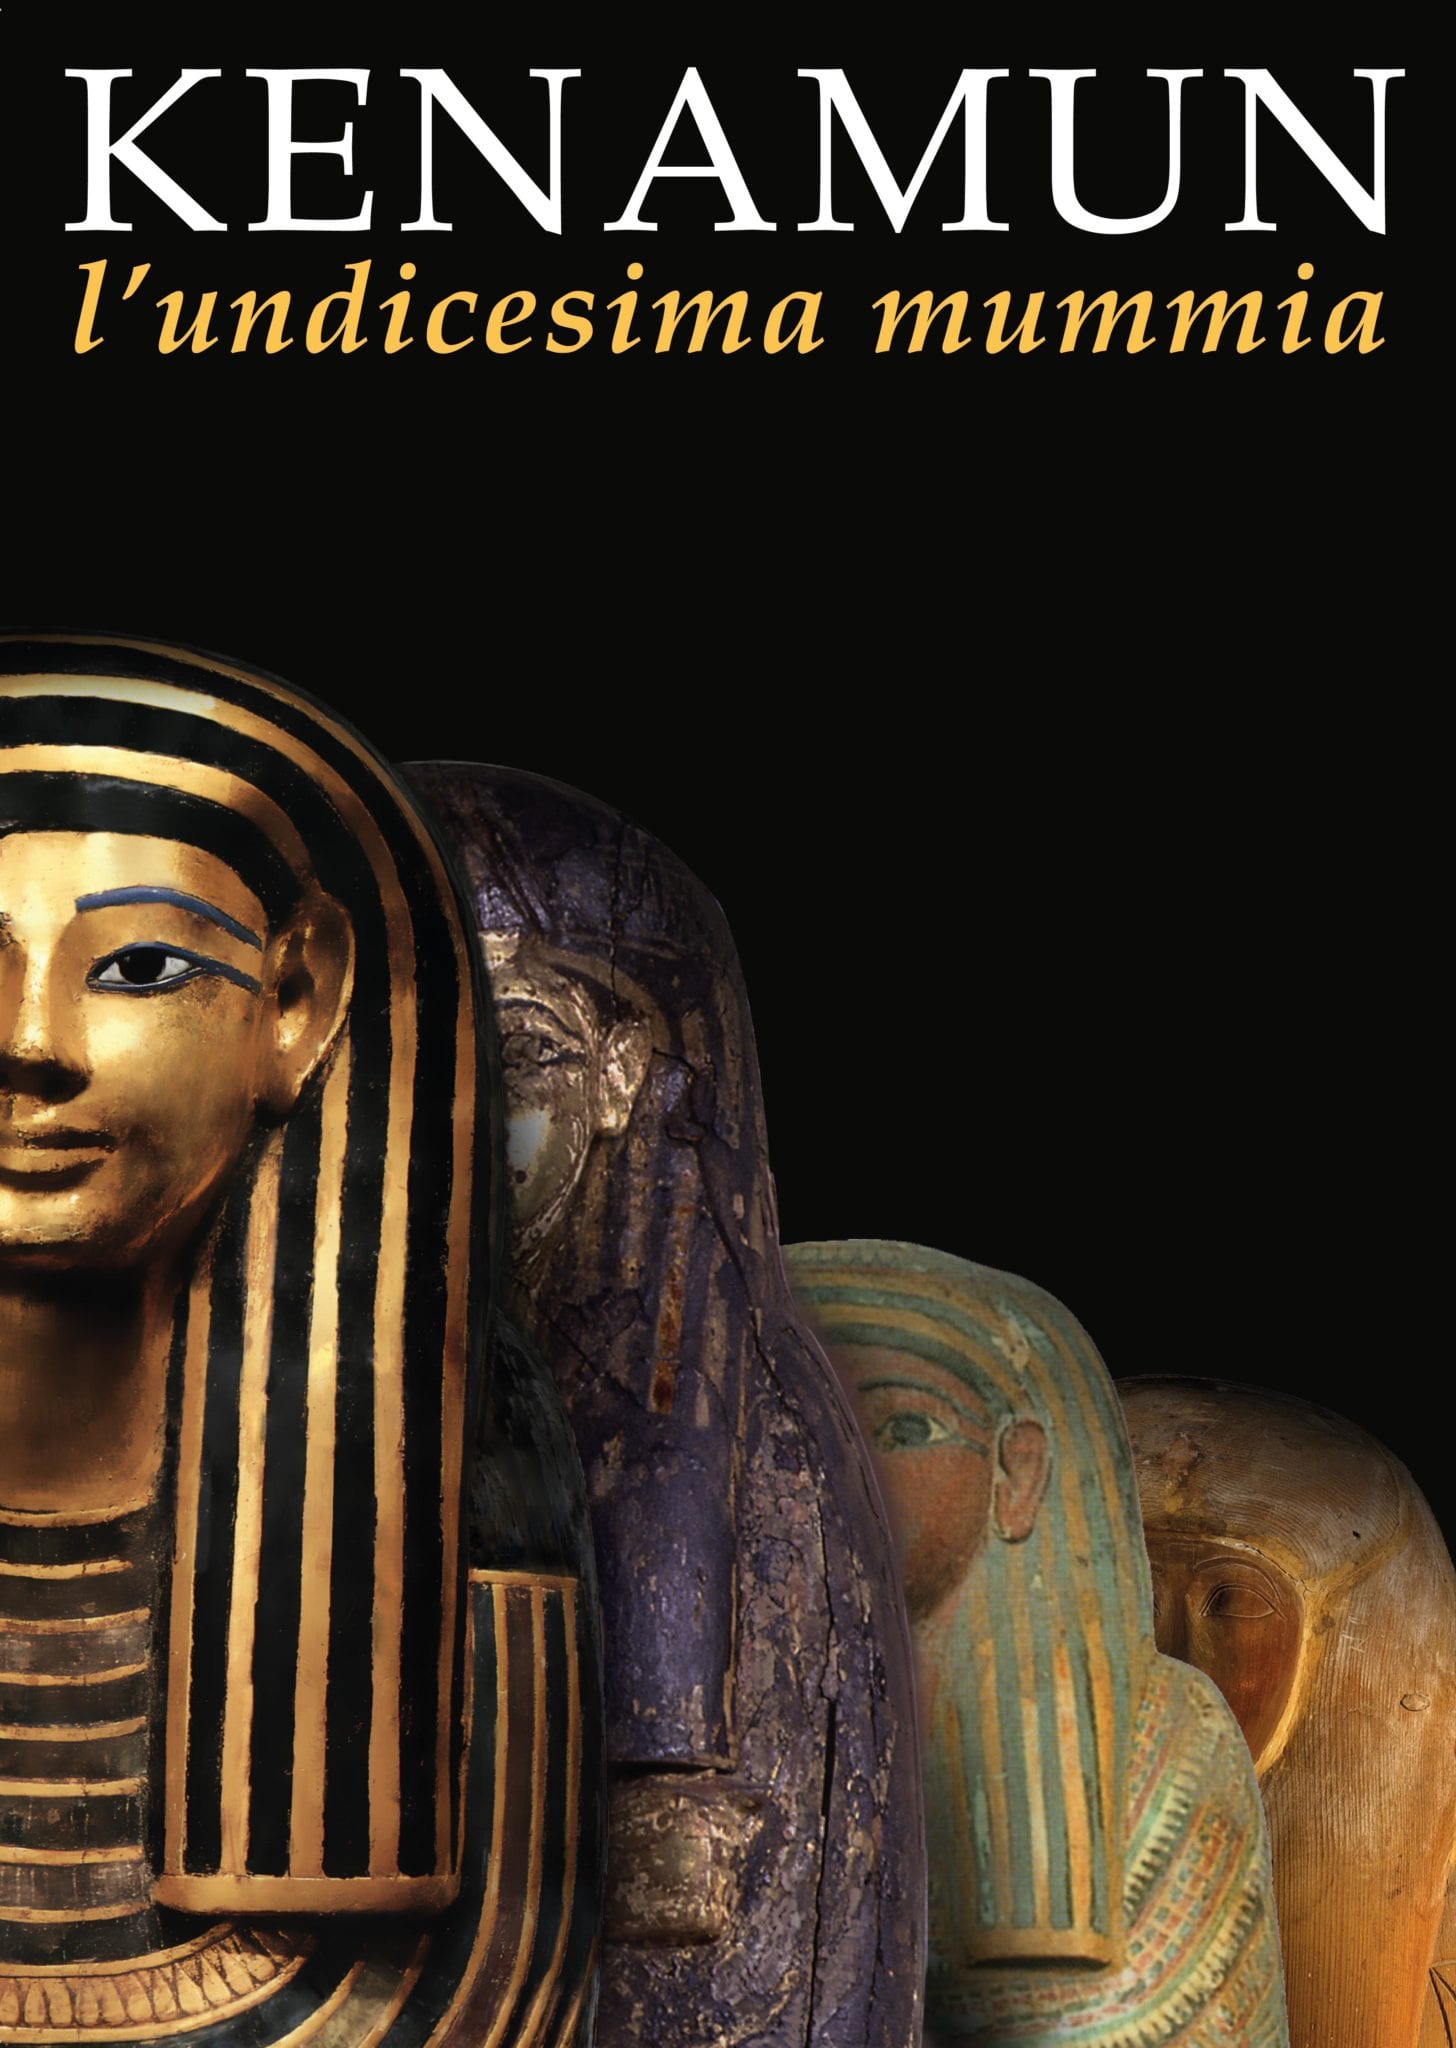 Il mistero dell’undicesima mummia in una mostra a Calci